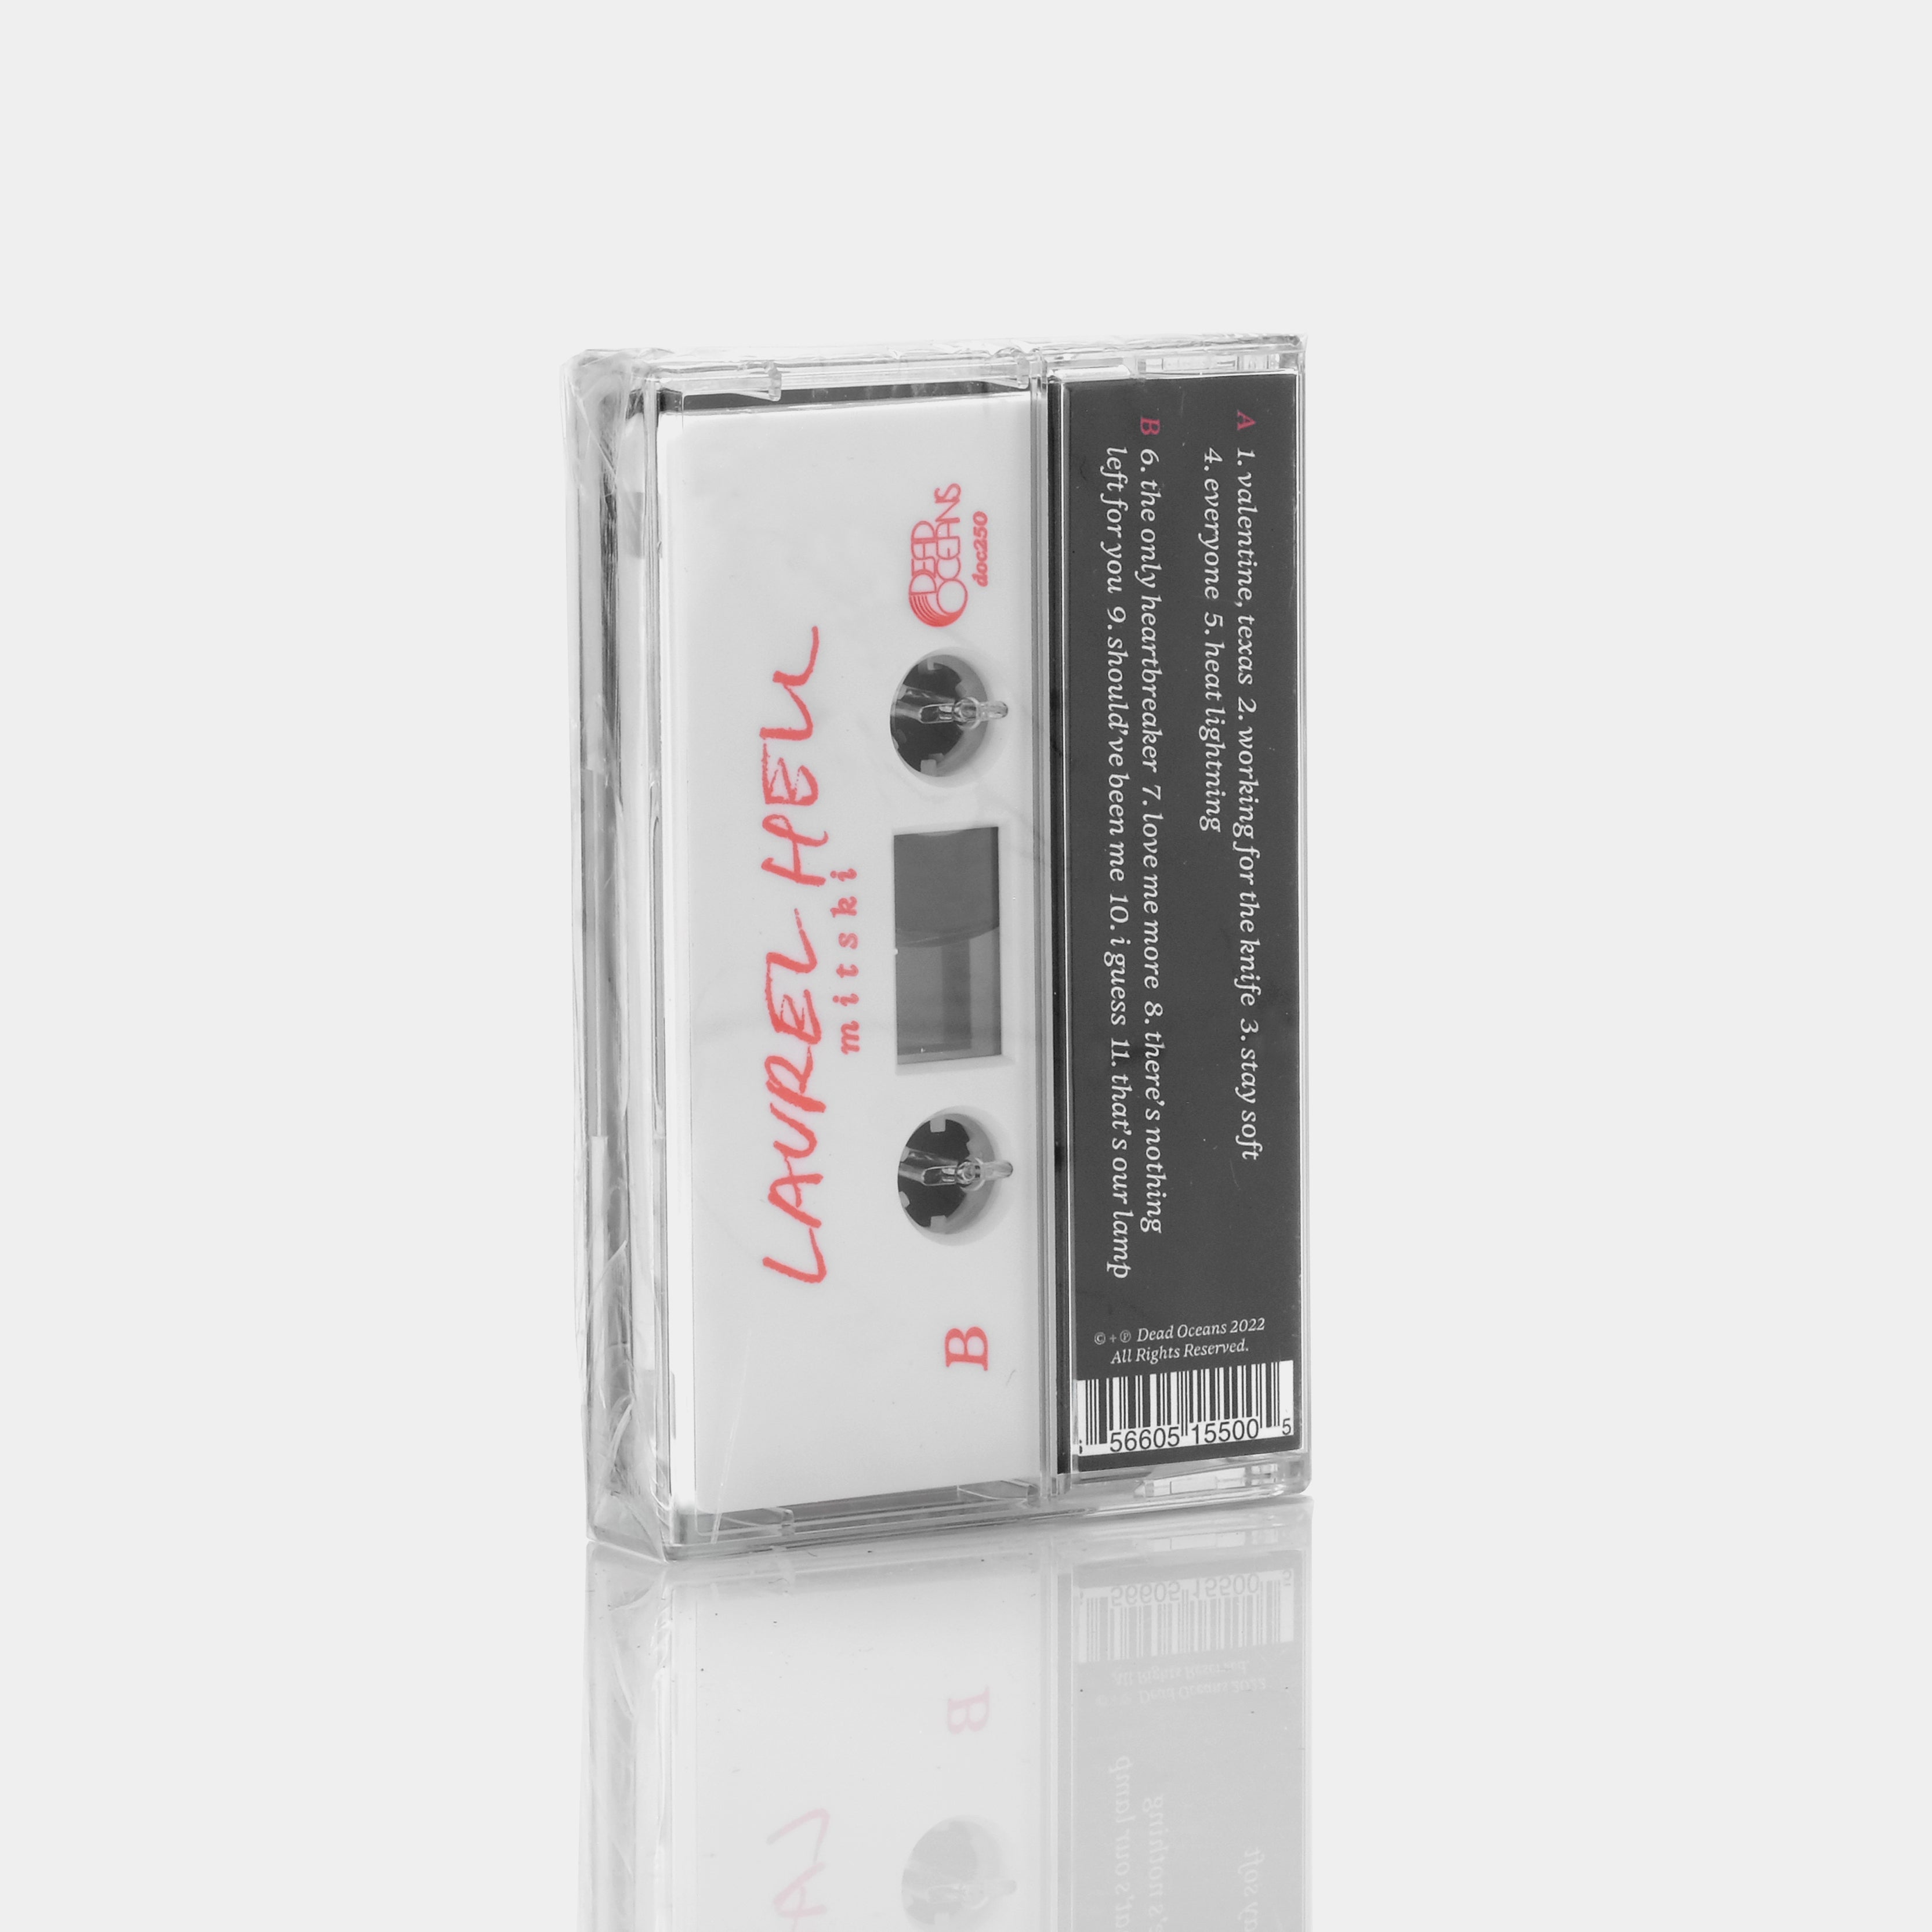 Mitski - Laurel Hell Cassette Tape